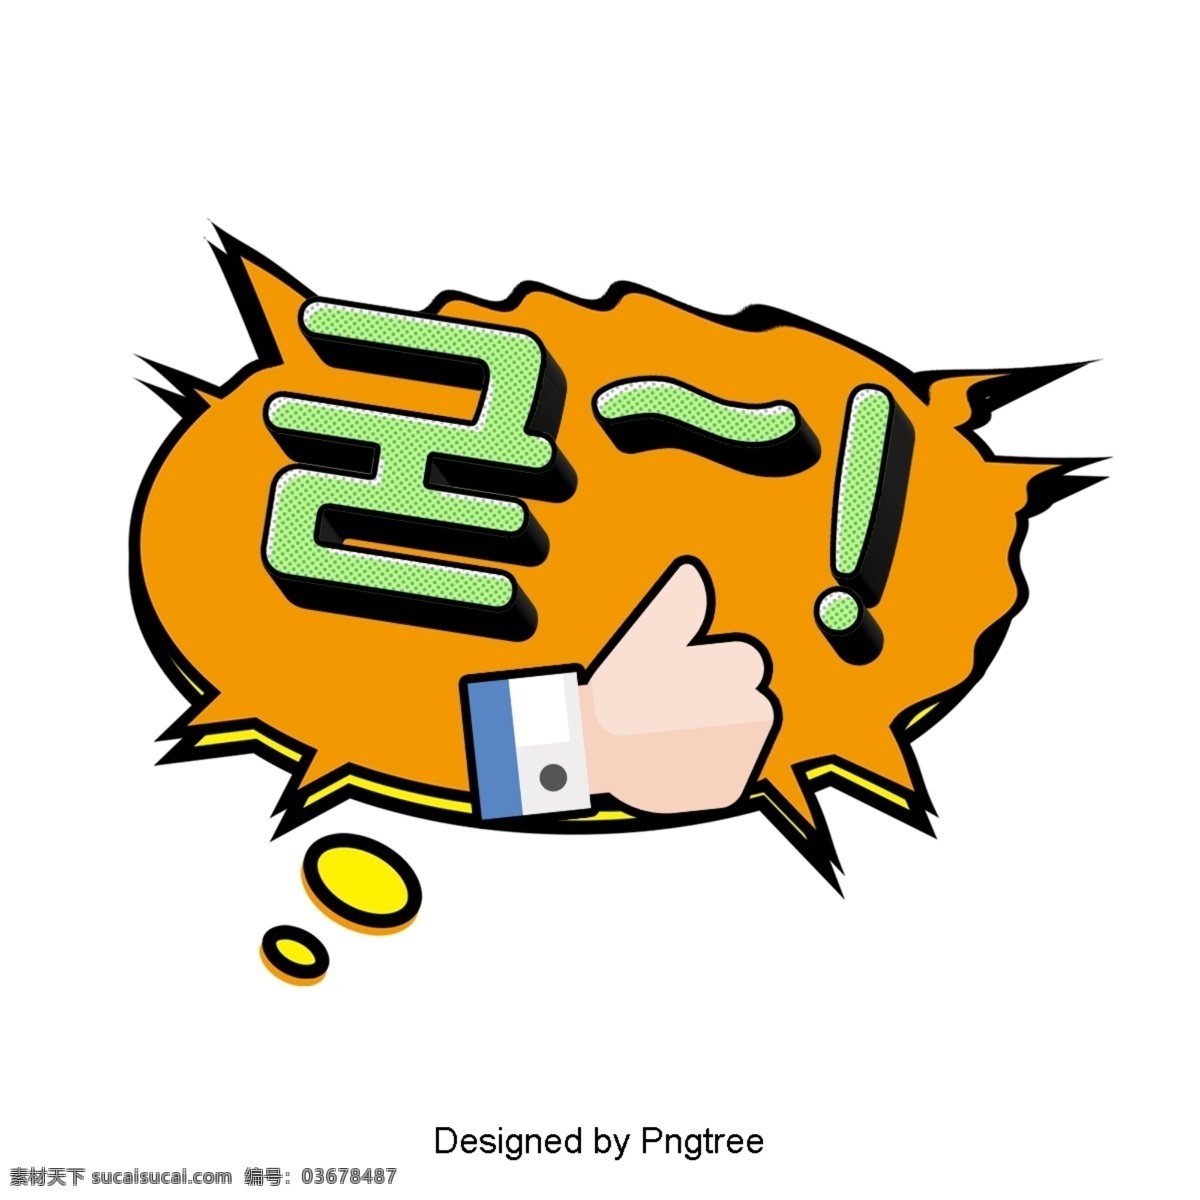 强烈 韩国 卡通 字体 耳语 硬 动画片 现场 语风 对话泡泡 装饰 帧 现代 简单 时尚 大拇指